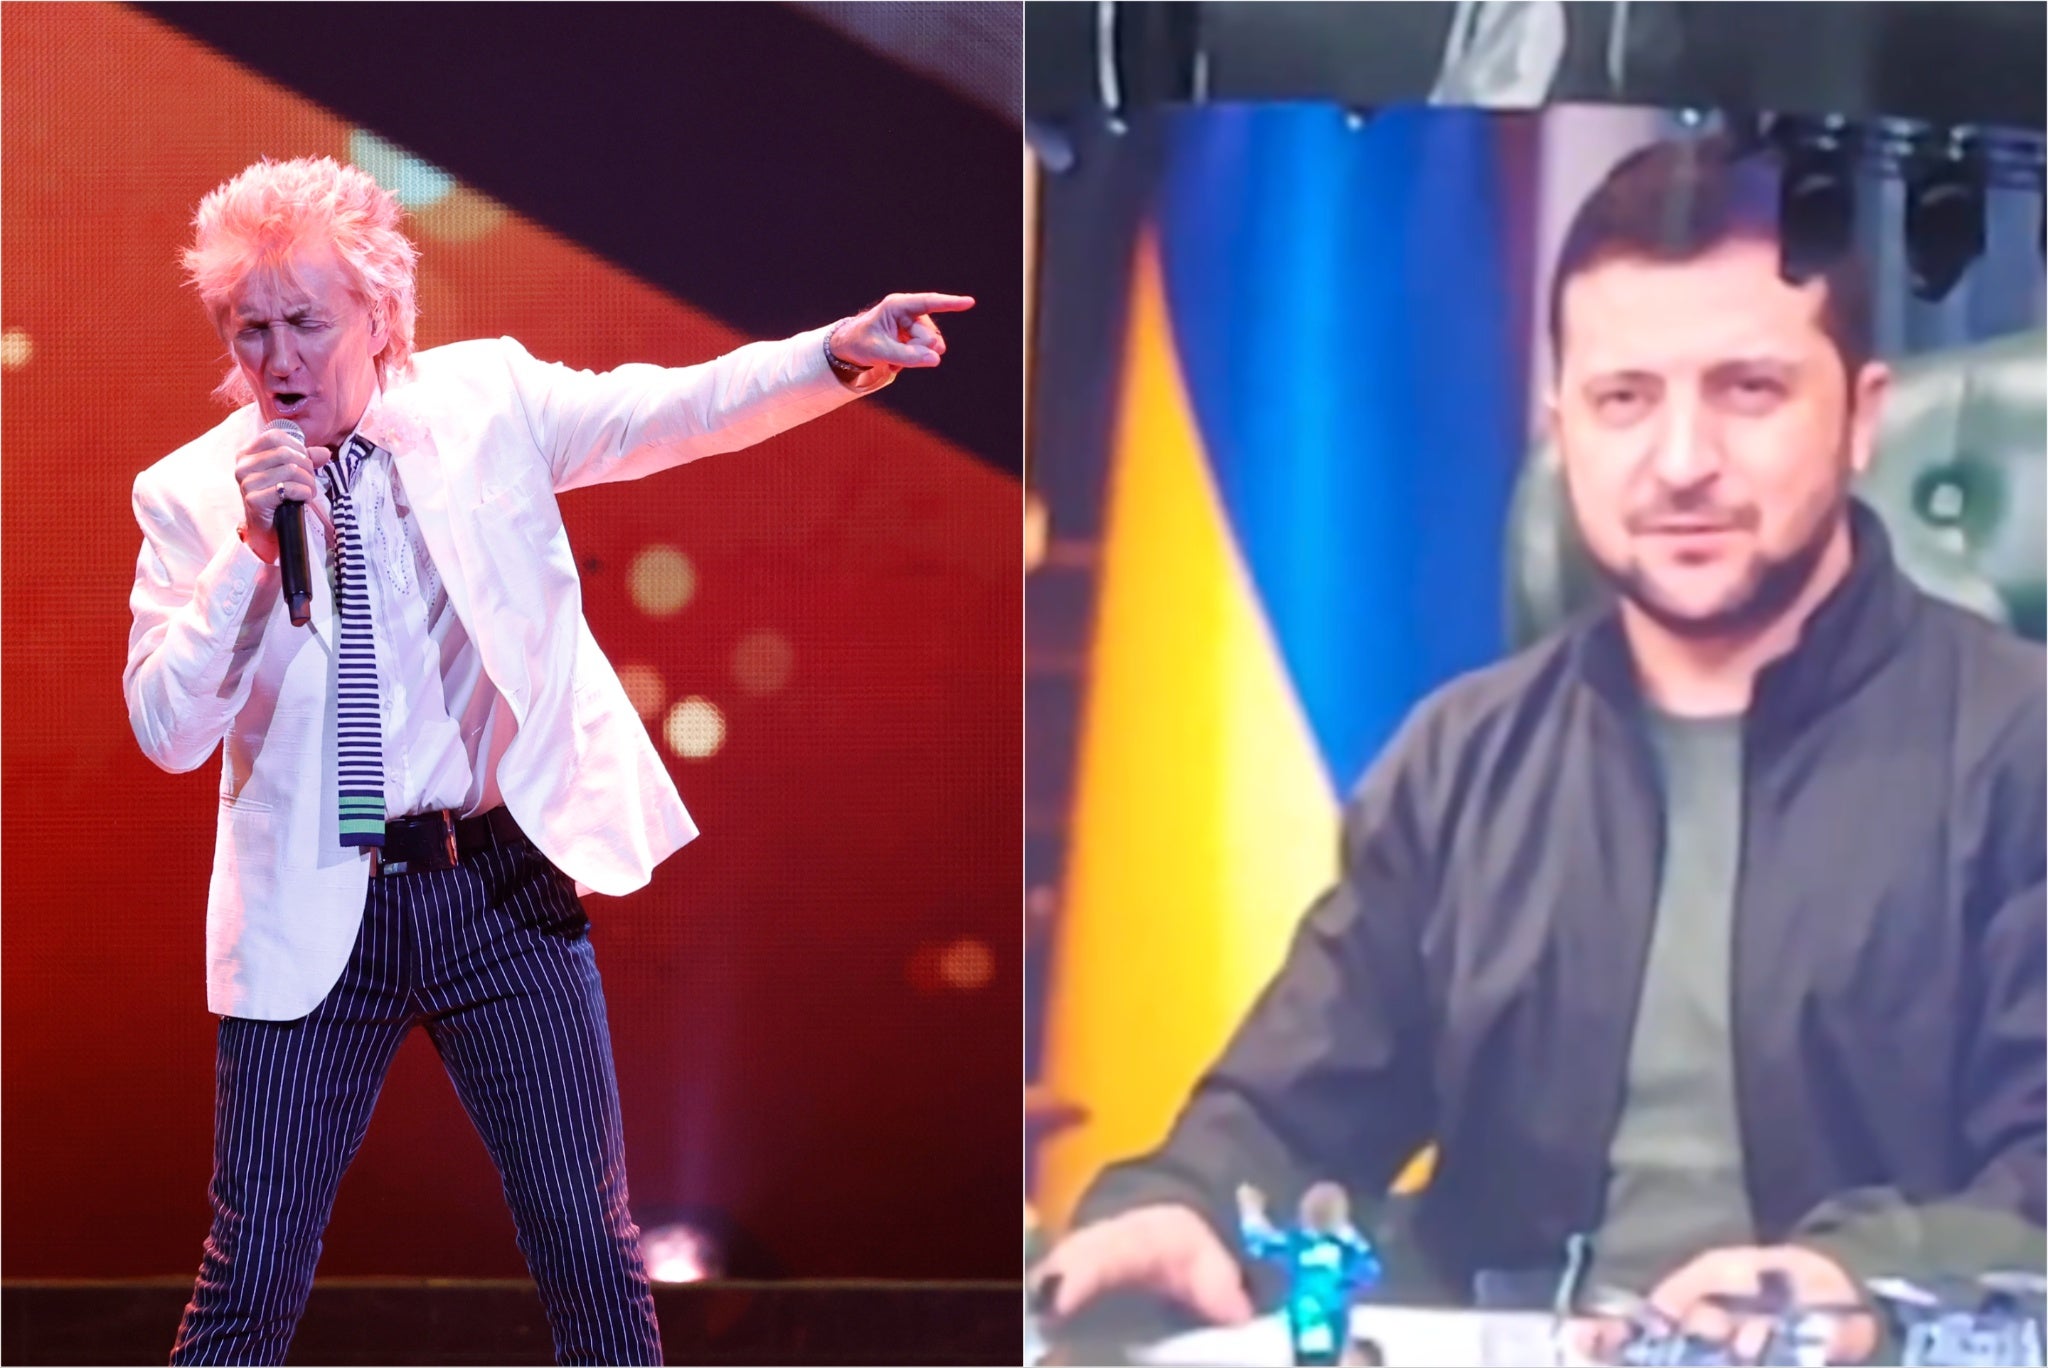 شارك رود ستيوارت صورًا للرئيس الأوكراني زيلينسكي خلال حفل موسيقي أقيم مؤخرًا